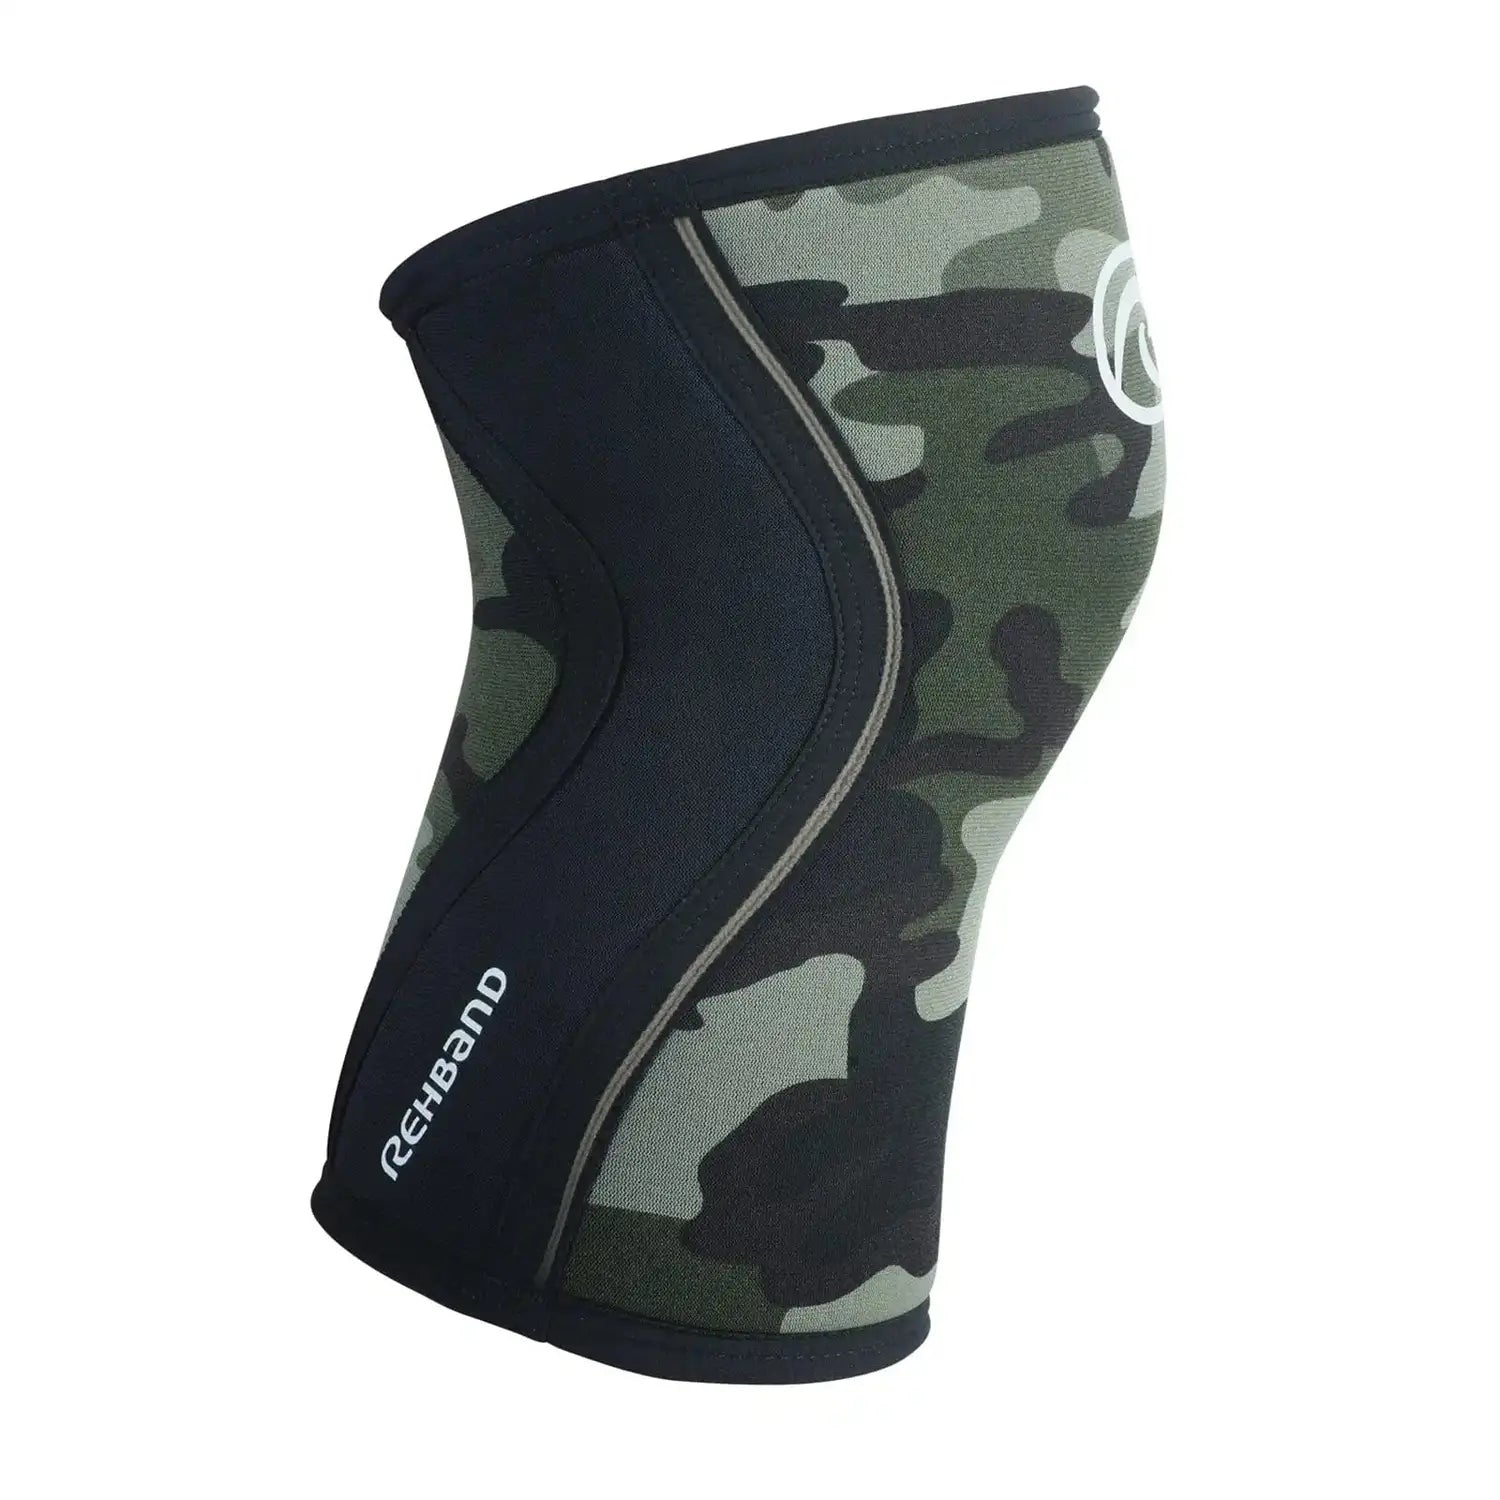 Rehband RX Knee Sleeve 7mm (Kniebandage) Camo-Schwarz kaufen bei HighPowered.ch